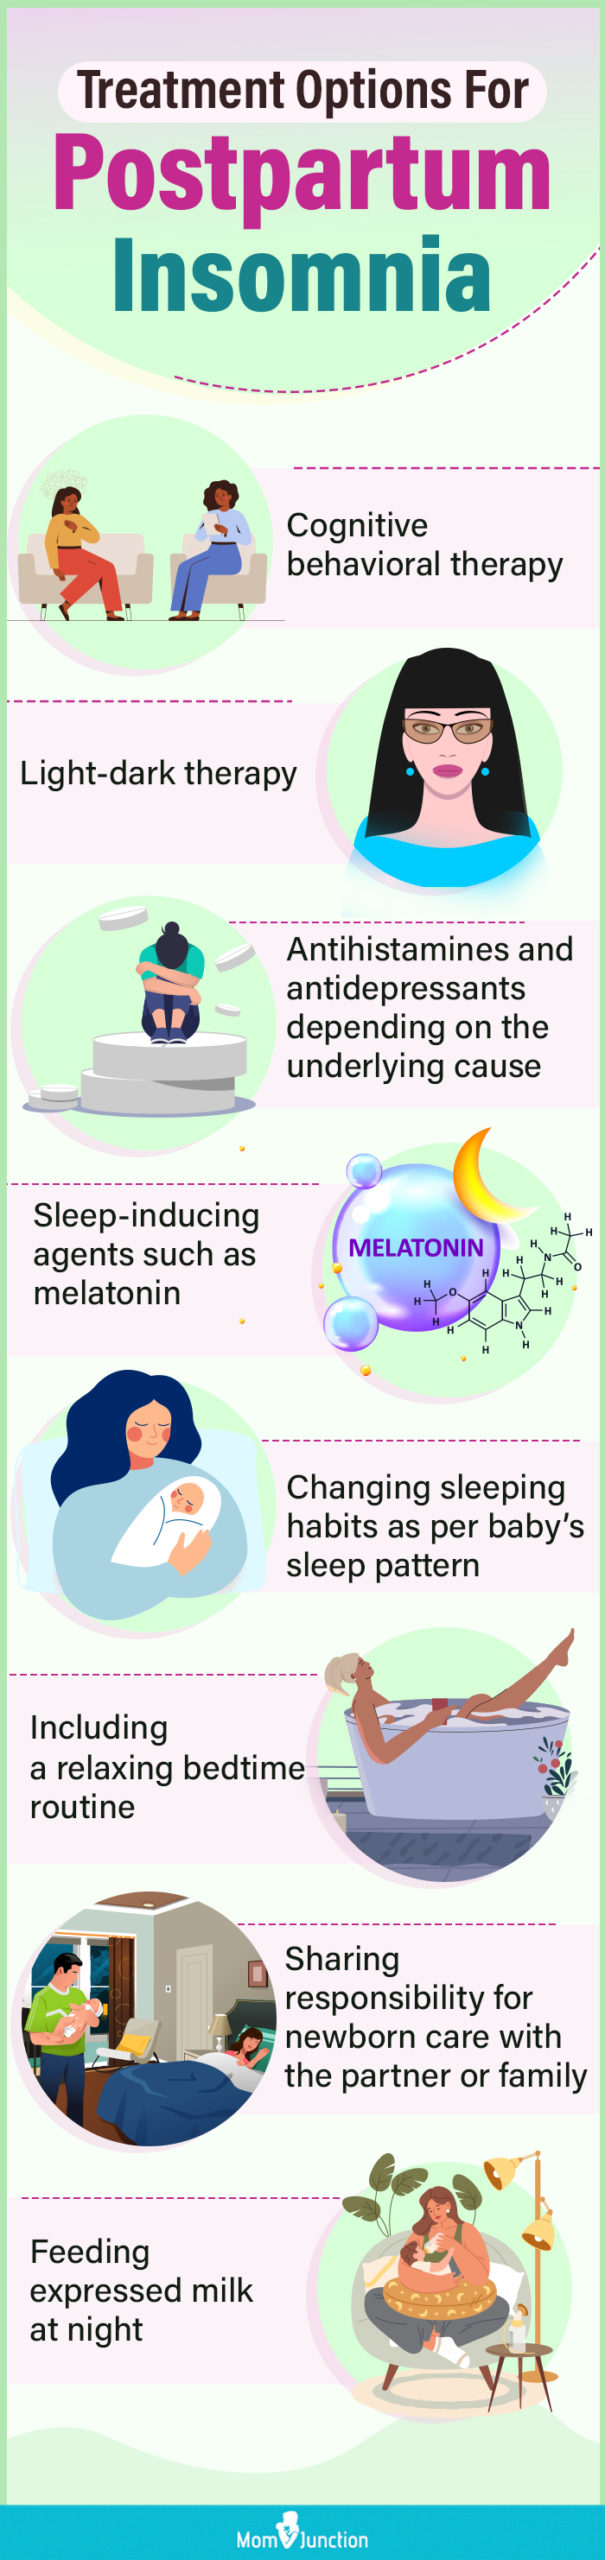 产后失眠的治疗方案(信息图)